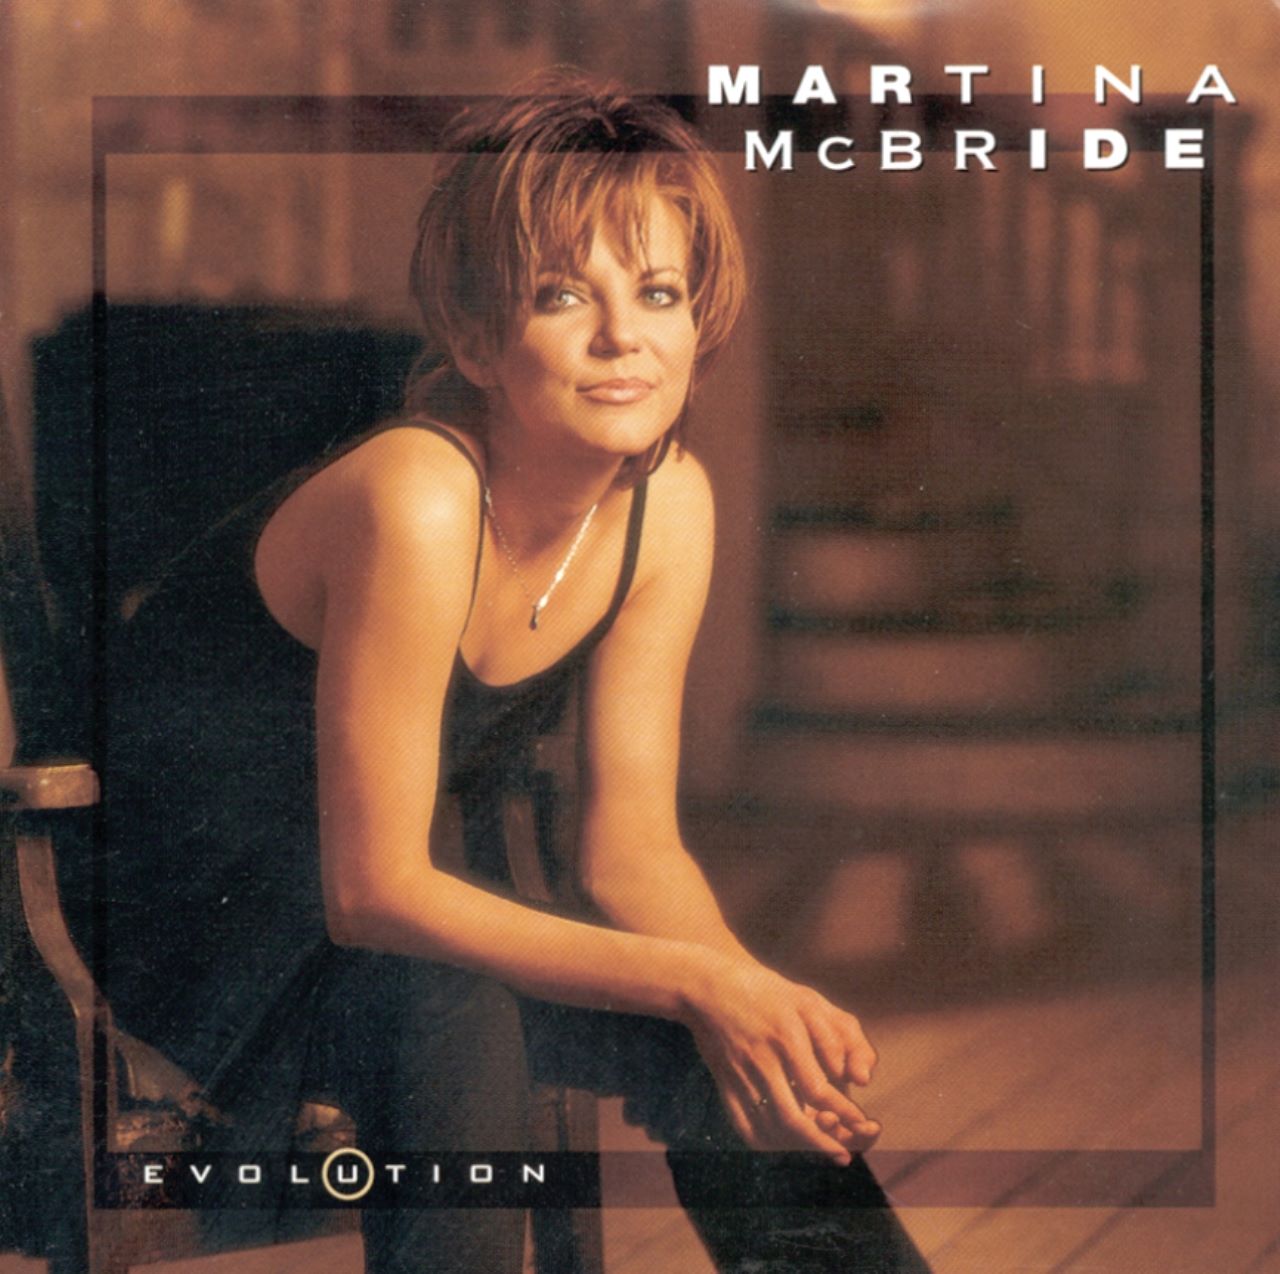 Martina McBride - Evolution cover album